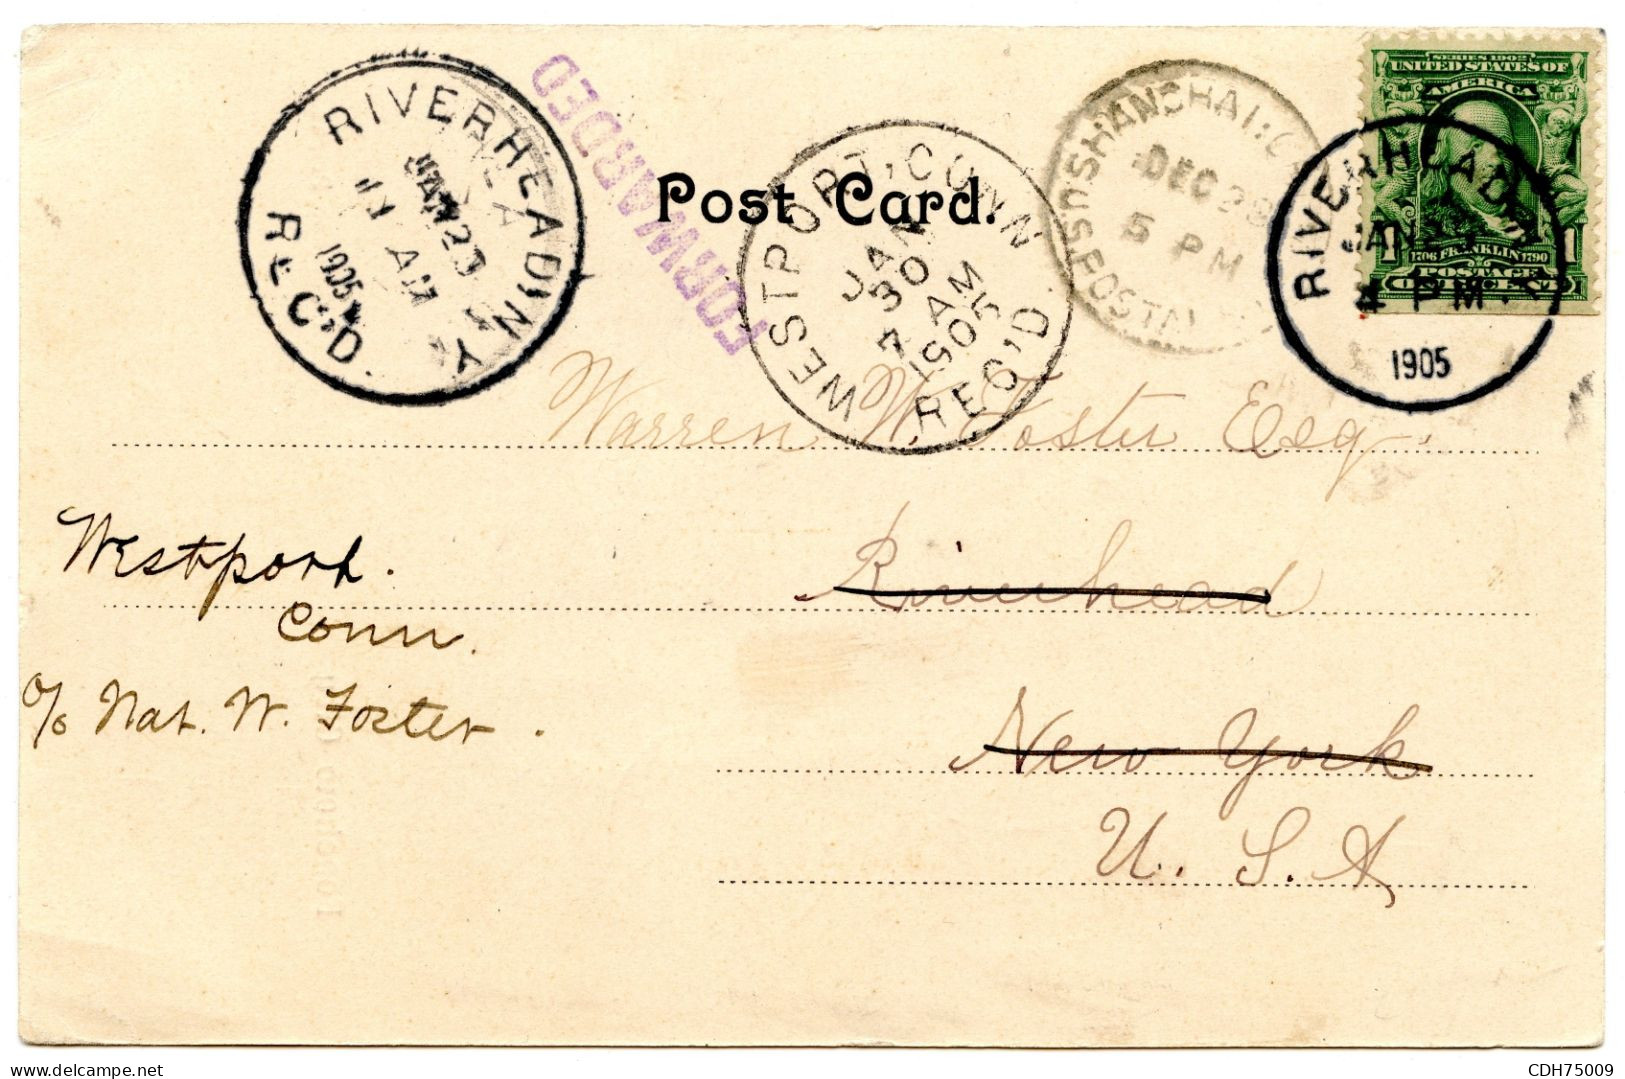 ETATS UNIS - CARTE POSTALE DE SHANGHAI POUR RIVERHEAD REEXPEDIEE A WESTPORT, 1905 - Lettres & Documents